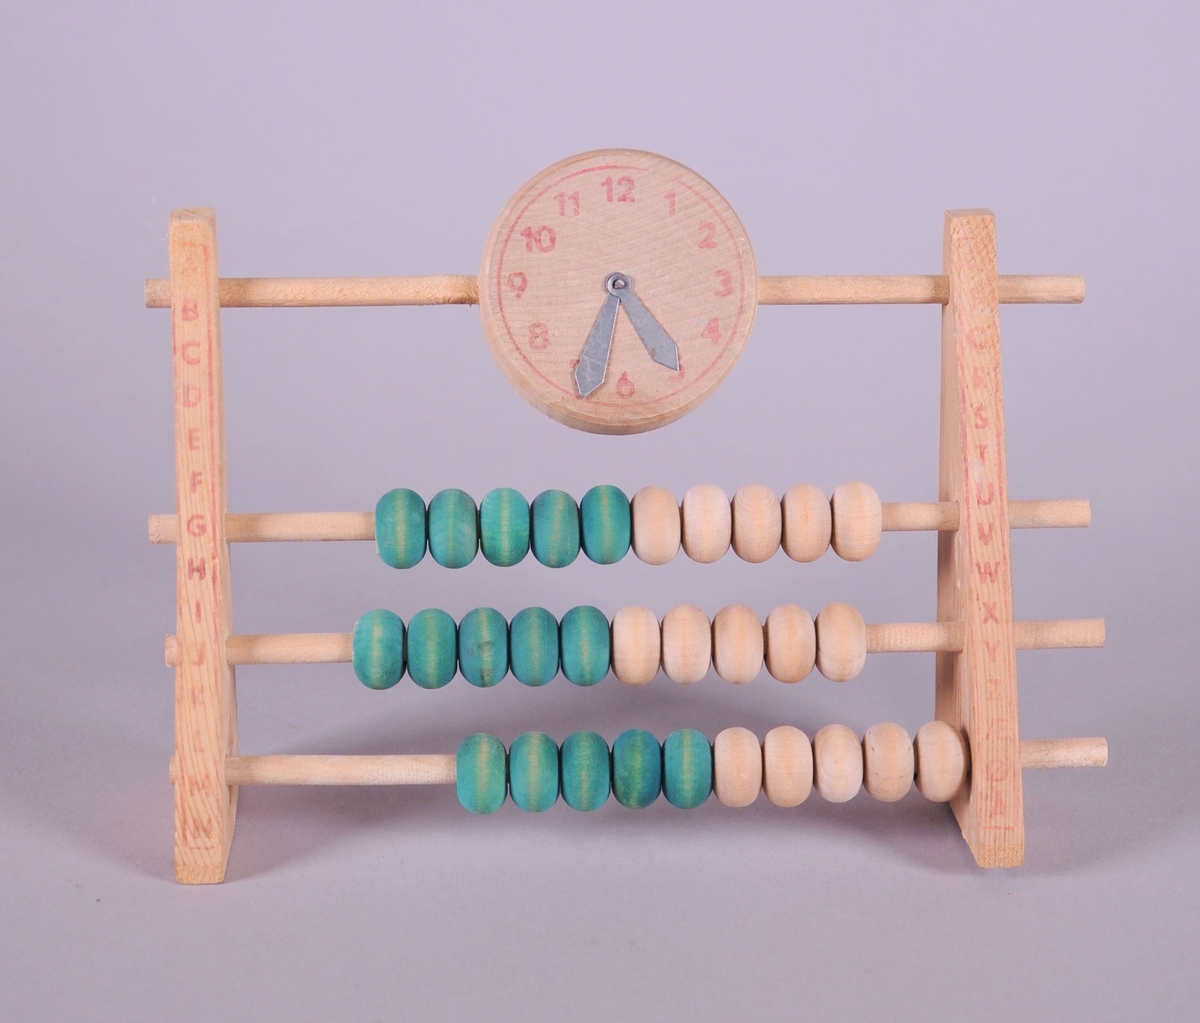 Kuleramme av tre, med klokke og grønne og trefargede kuler. Alfabetet er skrevet på hver side av kulerammen.